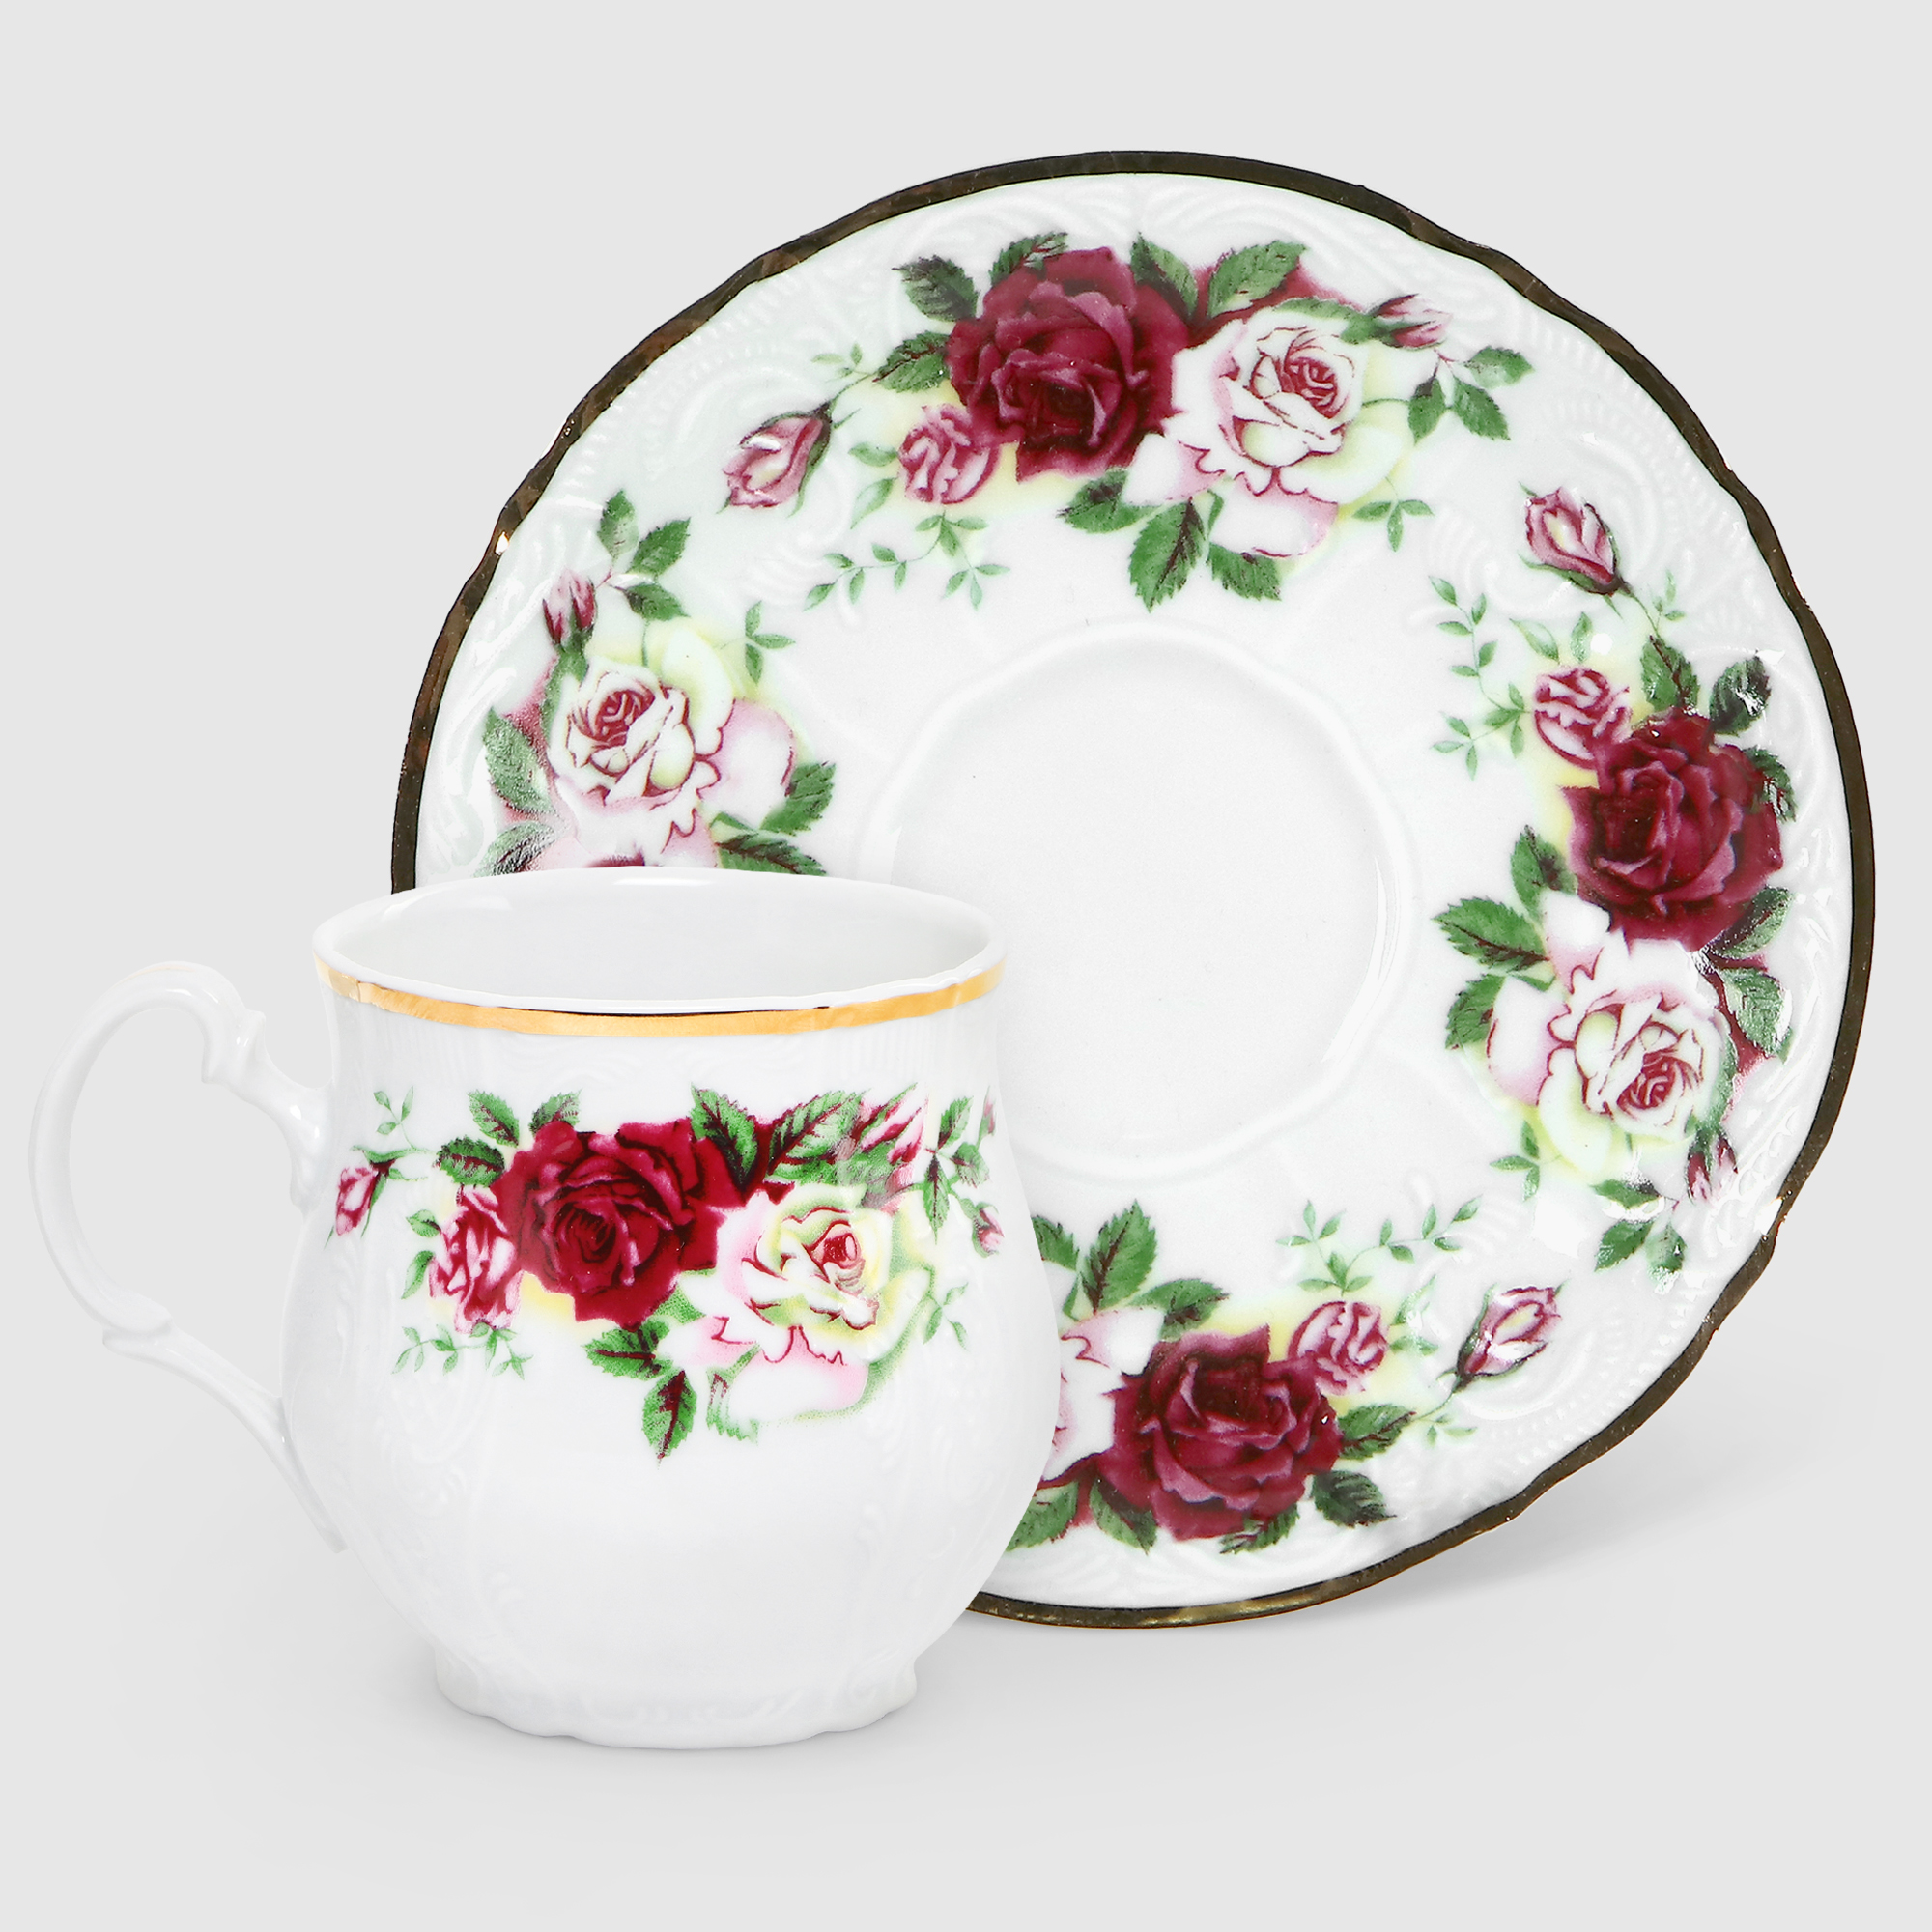 Чашка для чая с блюдцем Bernadotte Английская роза 310 мл 160 мм чашка для завтрака с блюдцем spode голубая италия 560 мл